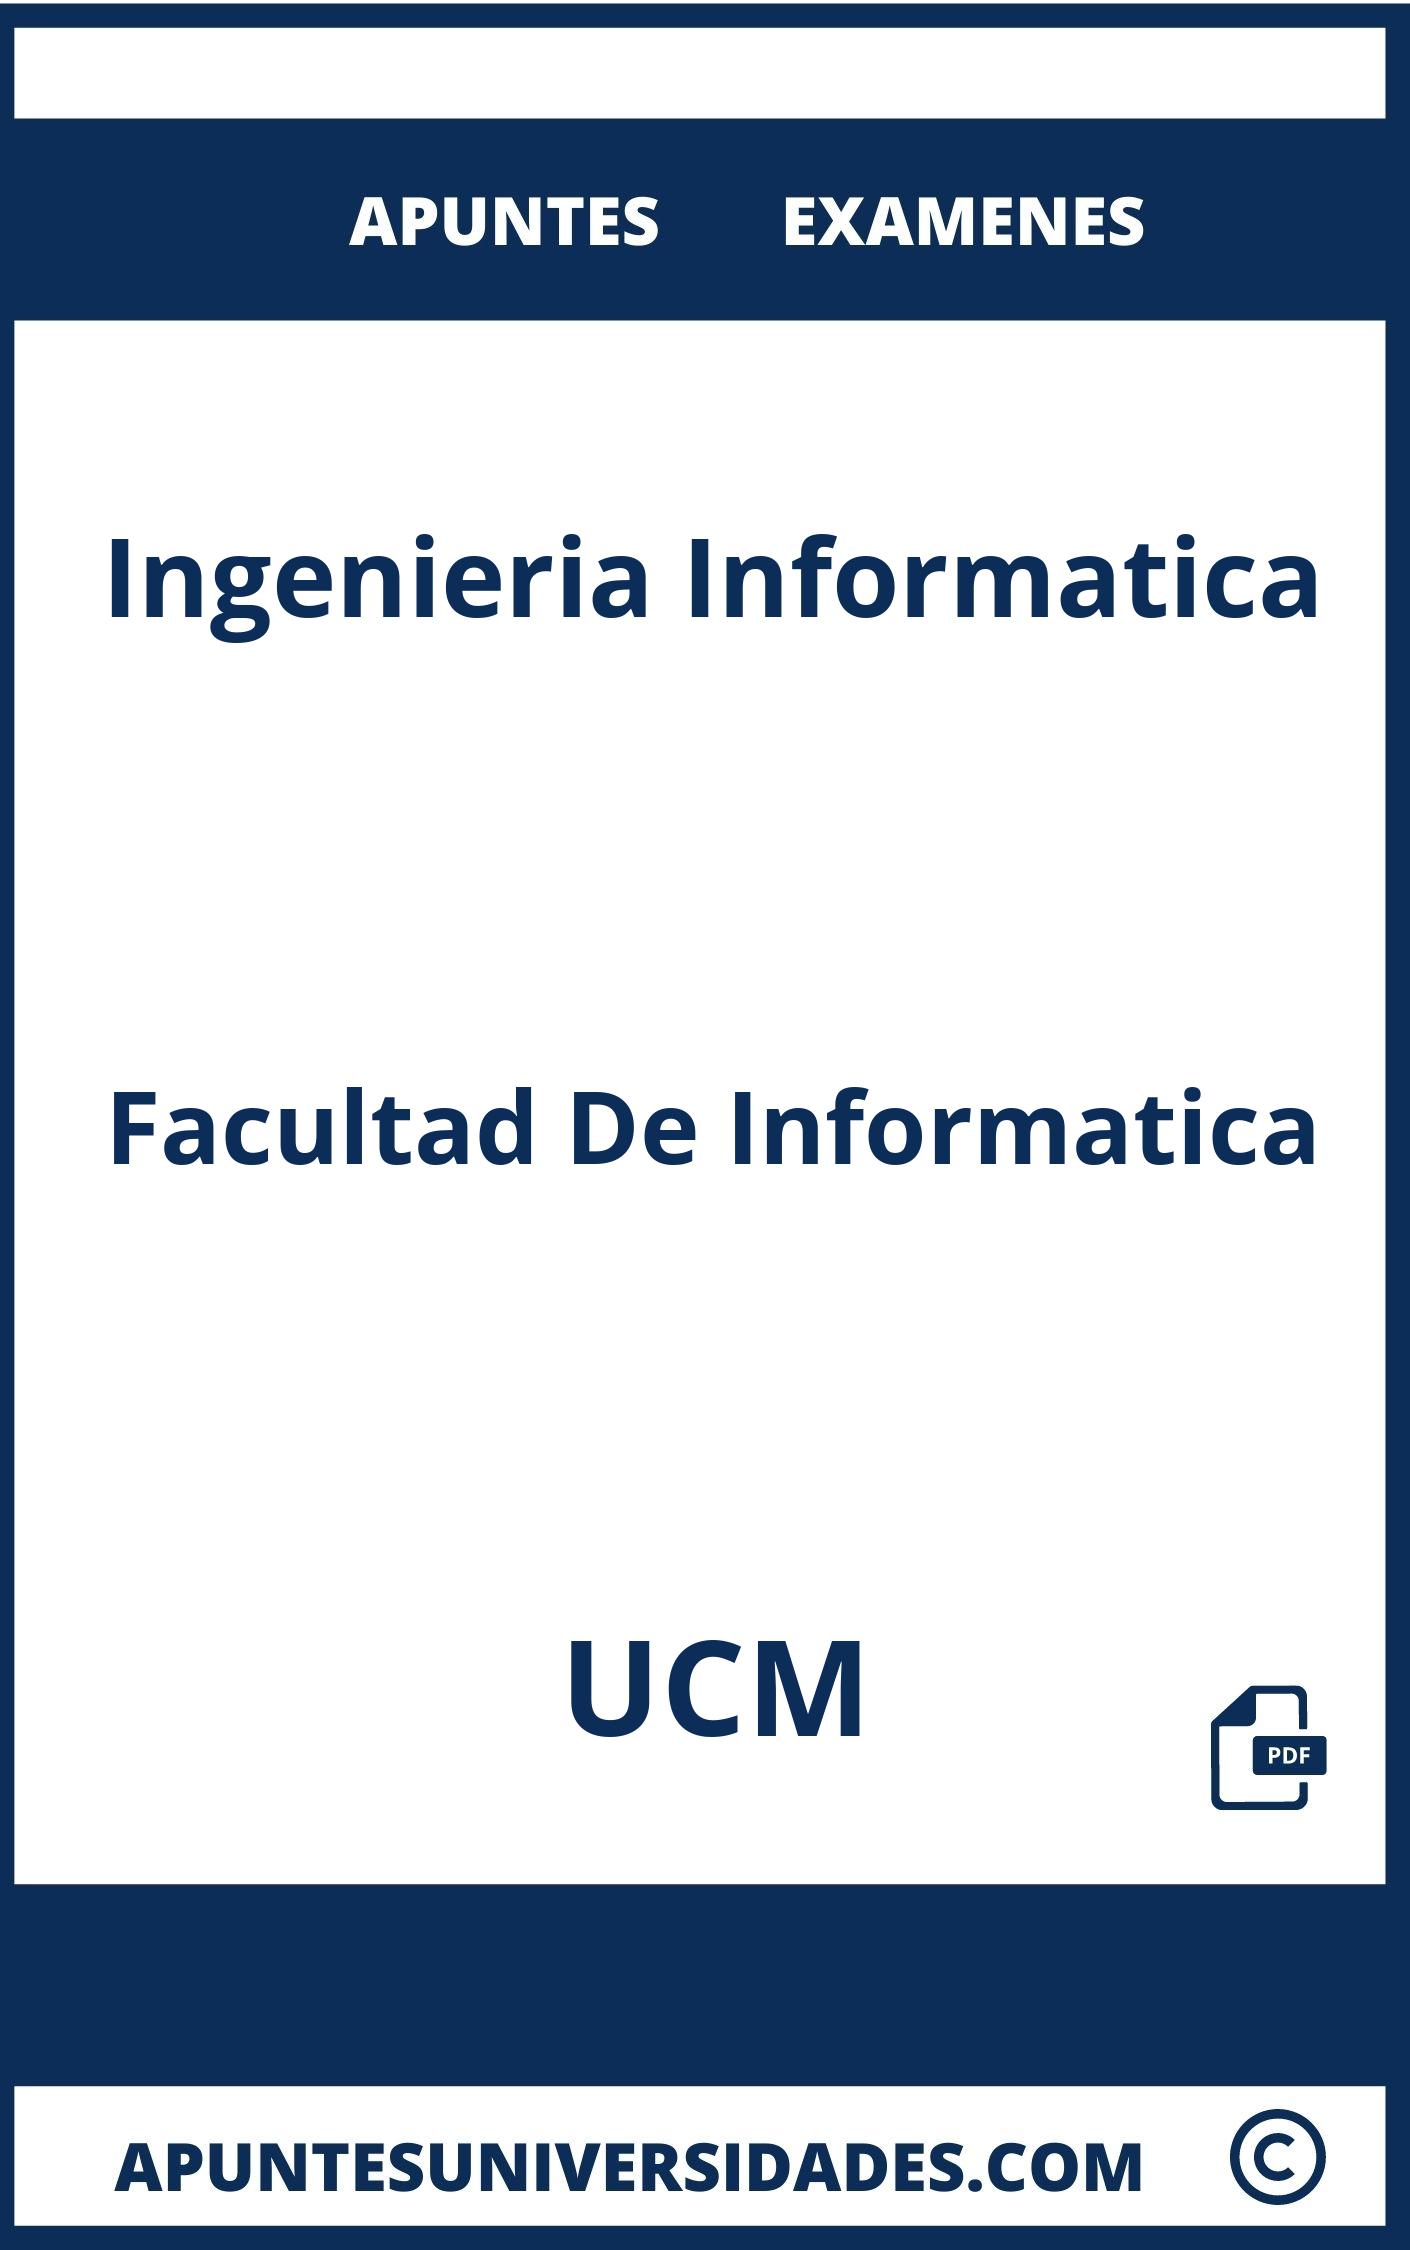 Ingenieria Informatica UCM Examenes Apuntes